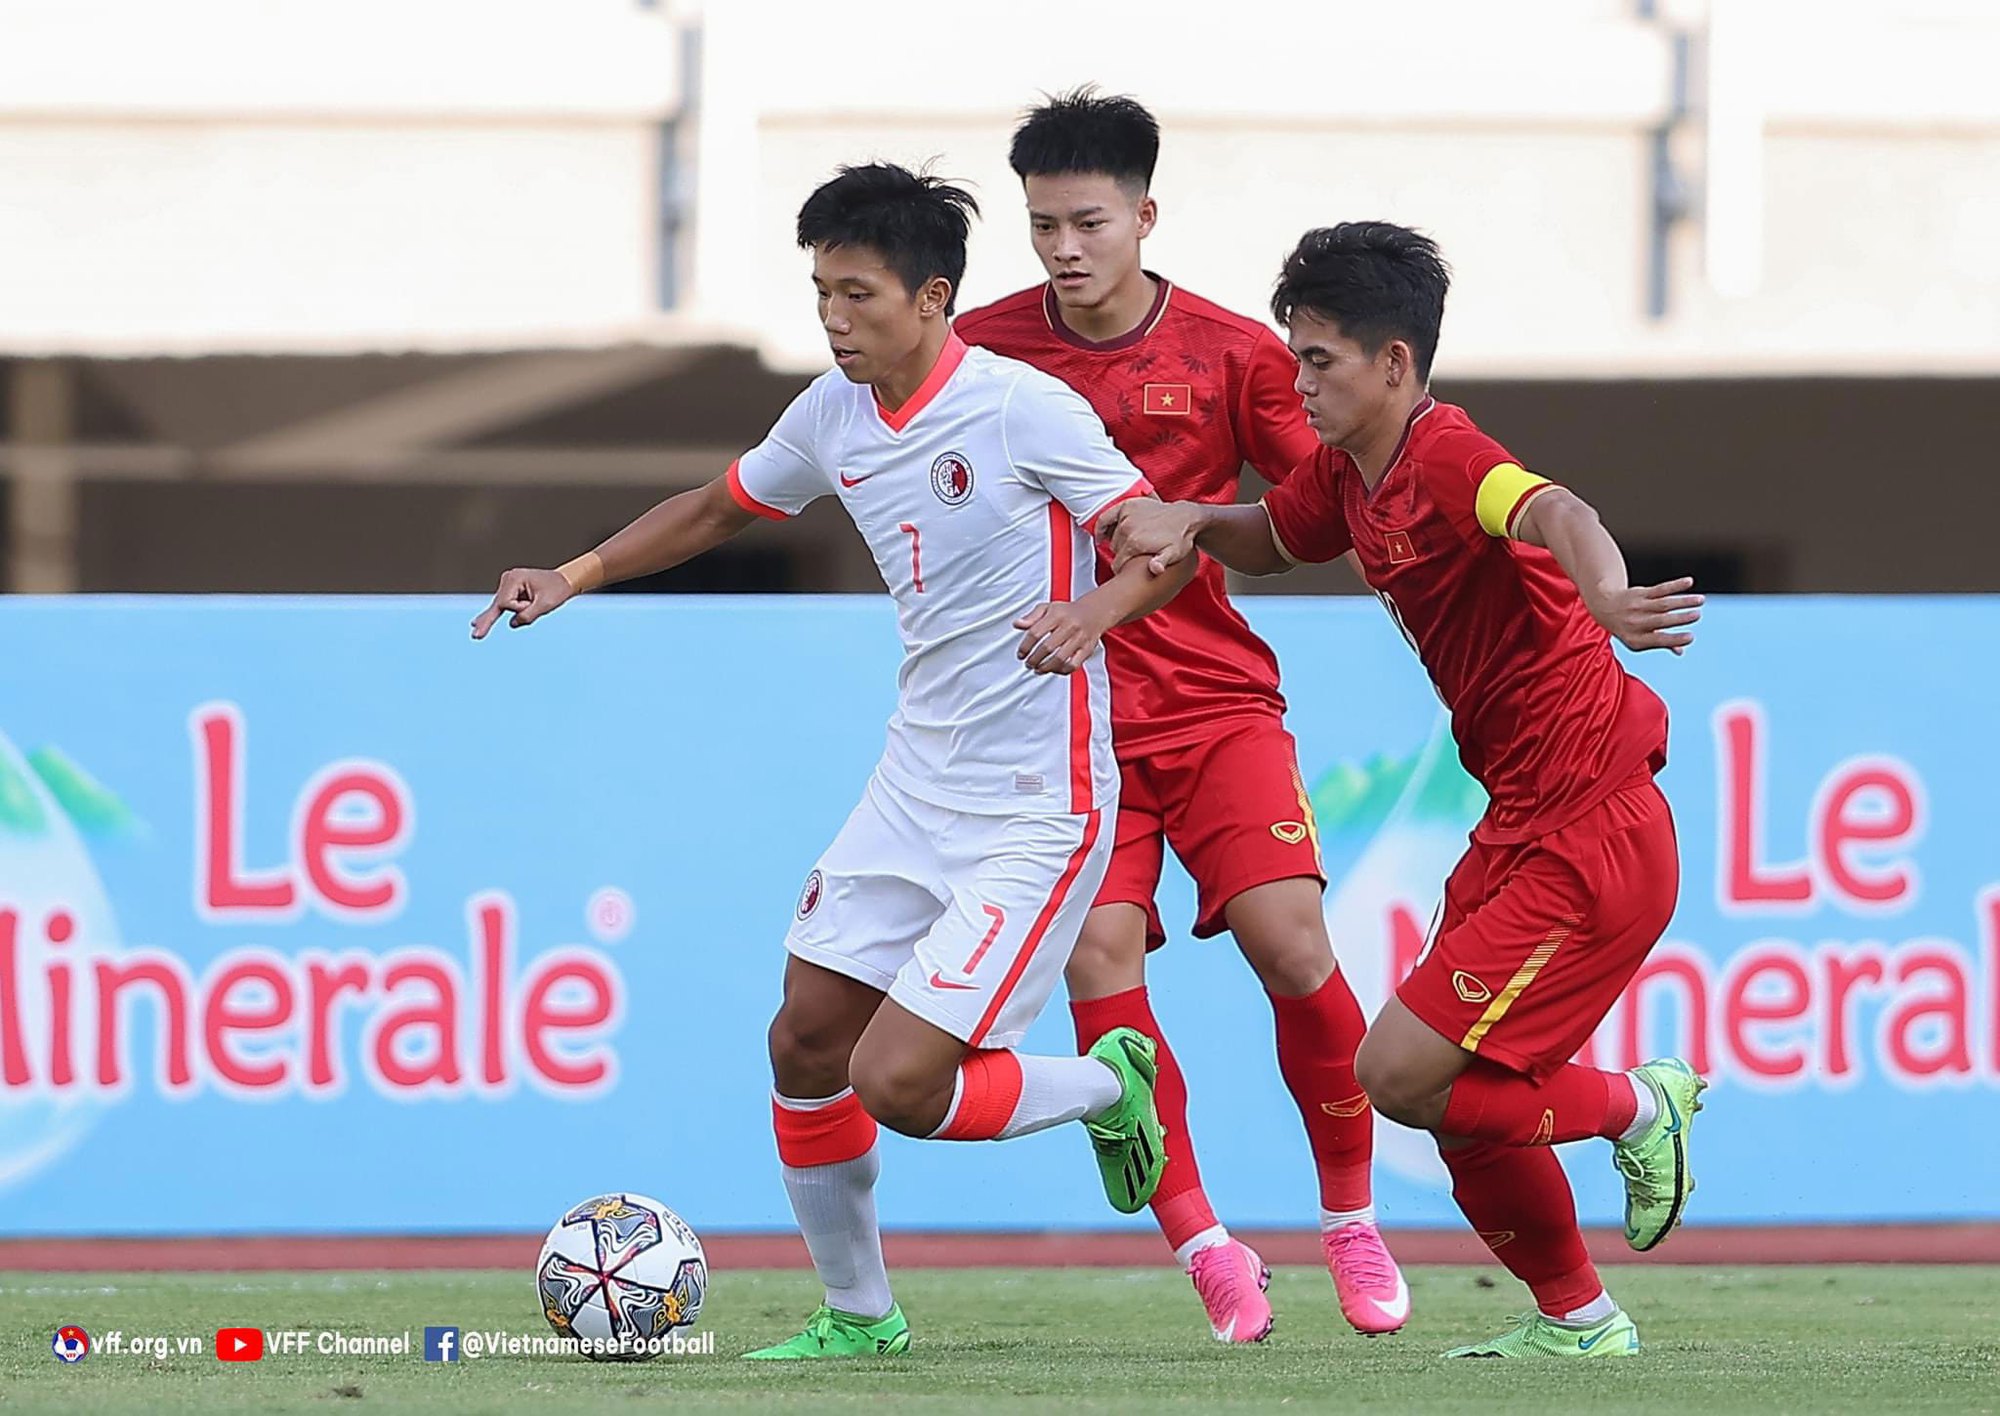 Vòng loại U20 châu Á: Tuyển Việt Nam rộng cửa - Ảnh 1.